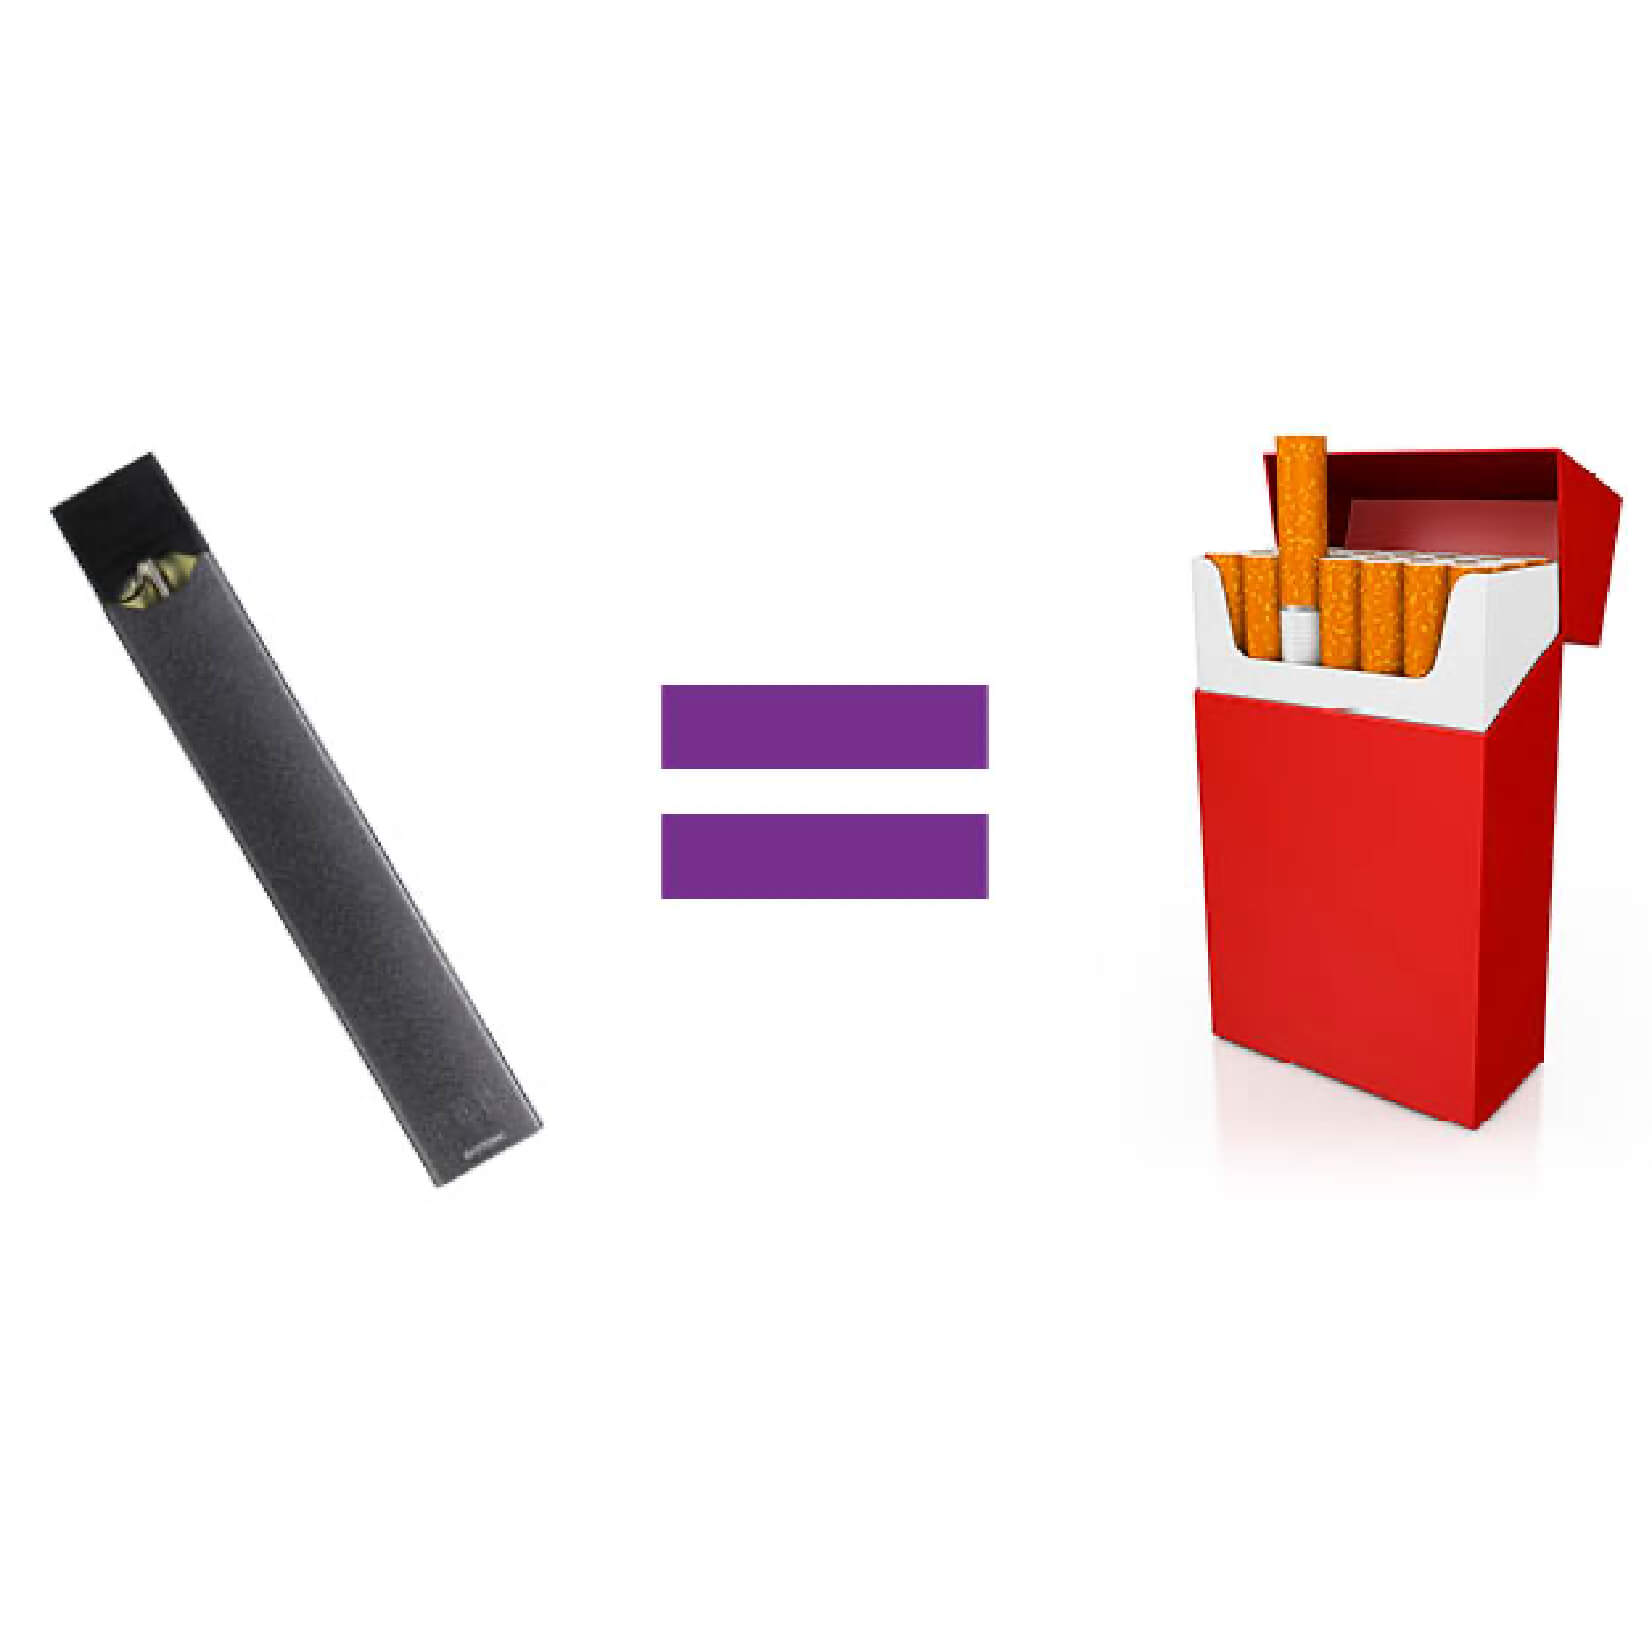 Graphic of e-cigarette equals graphic of cigarettes 